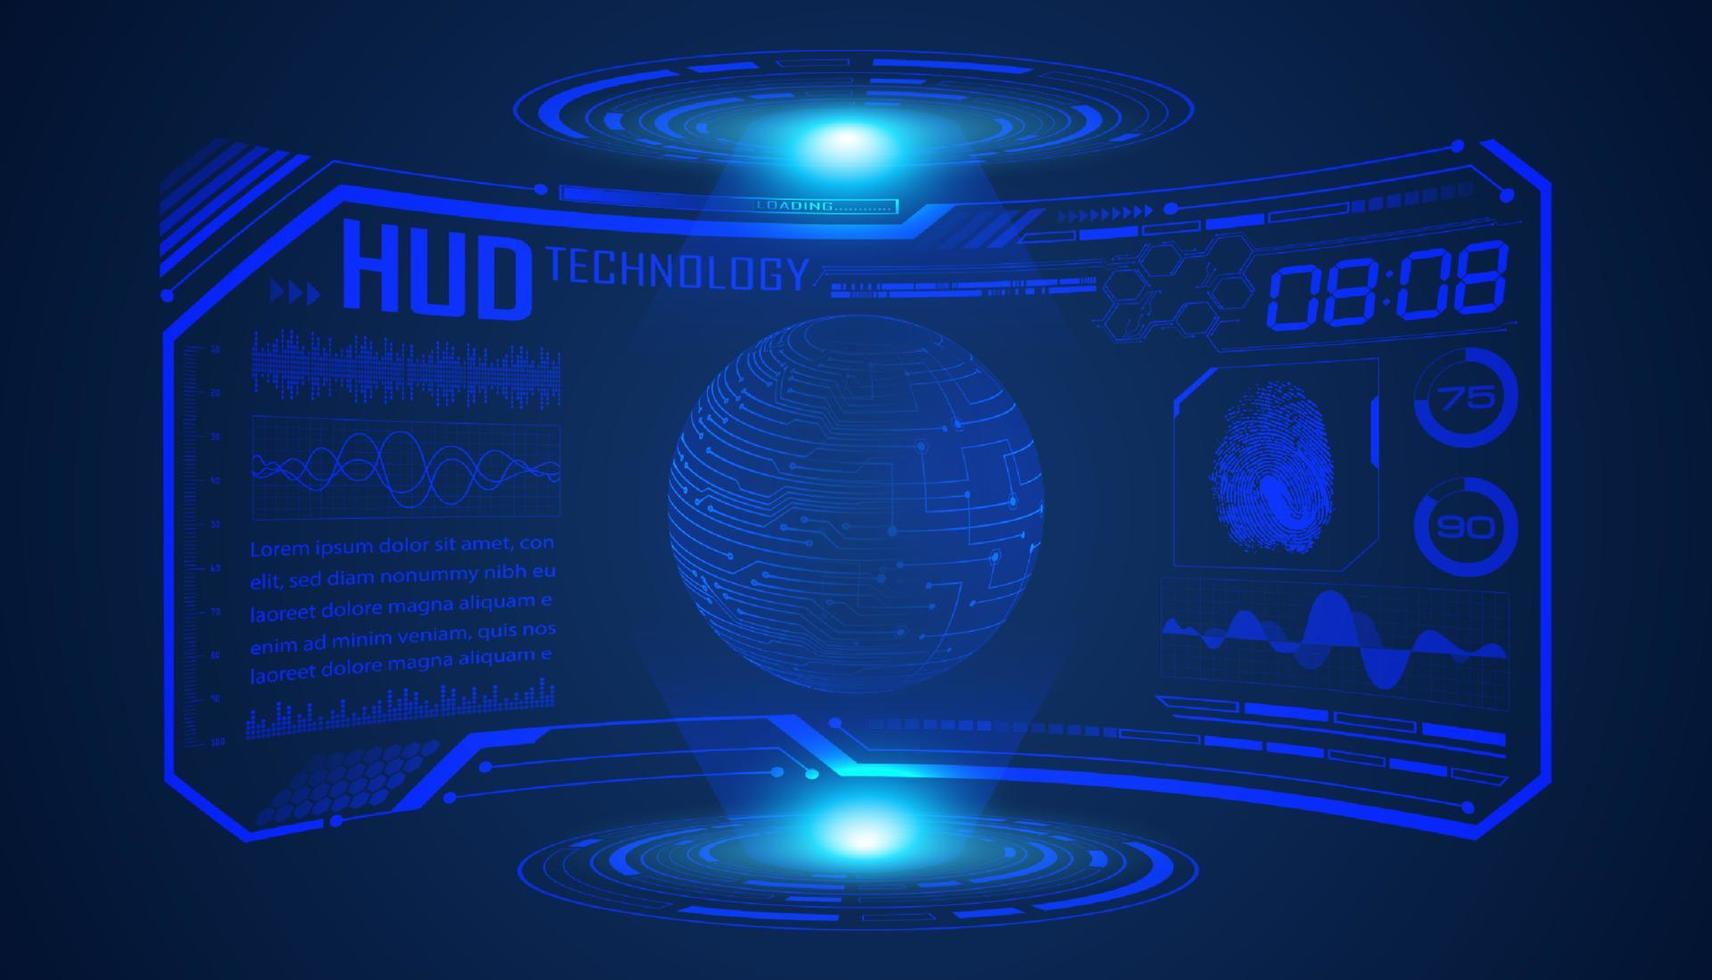 fondo de pantalla de tecnología hud moderna con globo azul vector